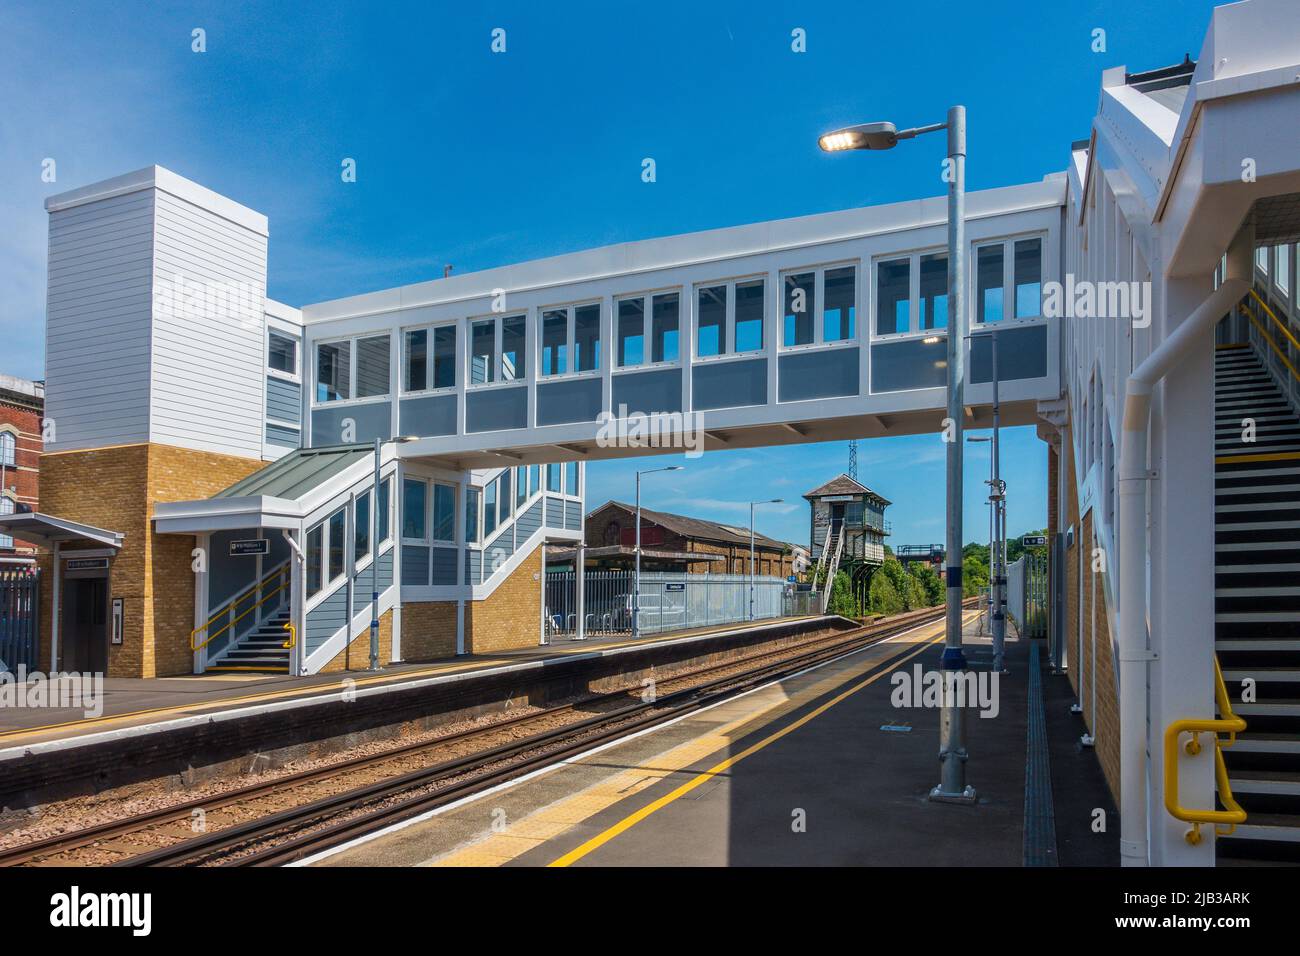 Neue Fußgängerbrücke und Aufzüge am Bahnhof Canterbury East. Redundante Signalbox und Warenschuppen im Hintergrund. Südöstlich, britische Bahn, Netzbahn Stockfoto